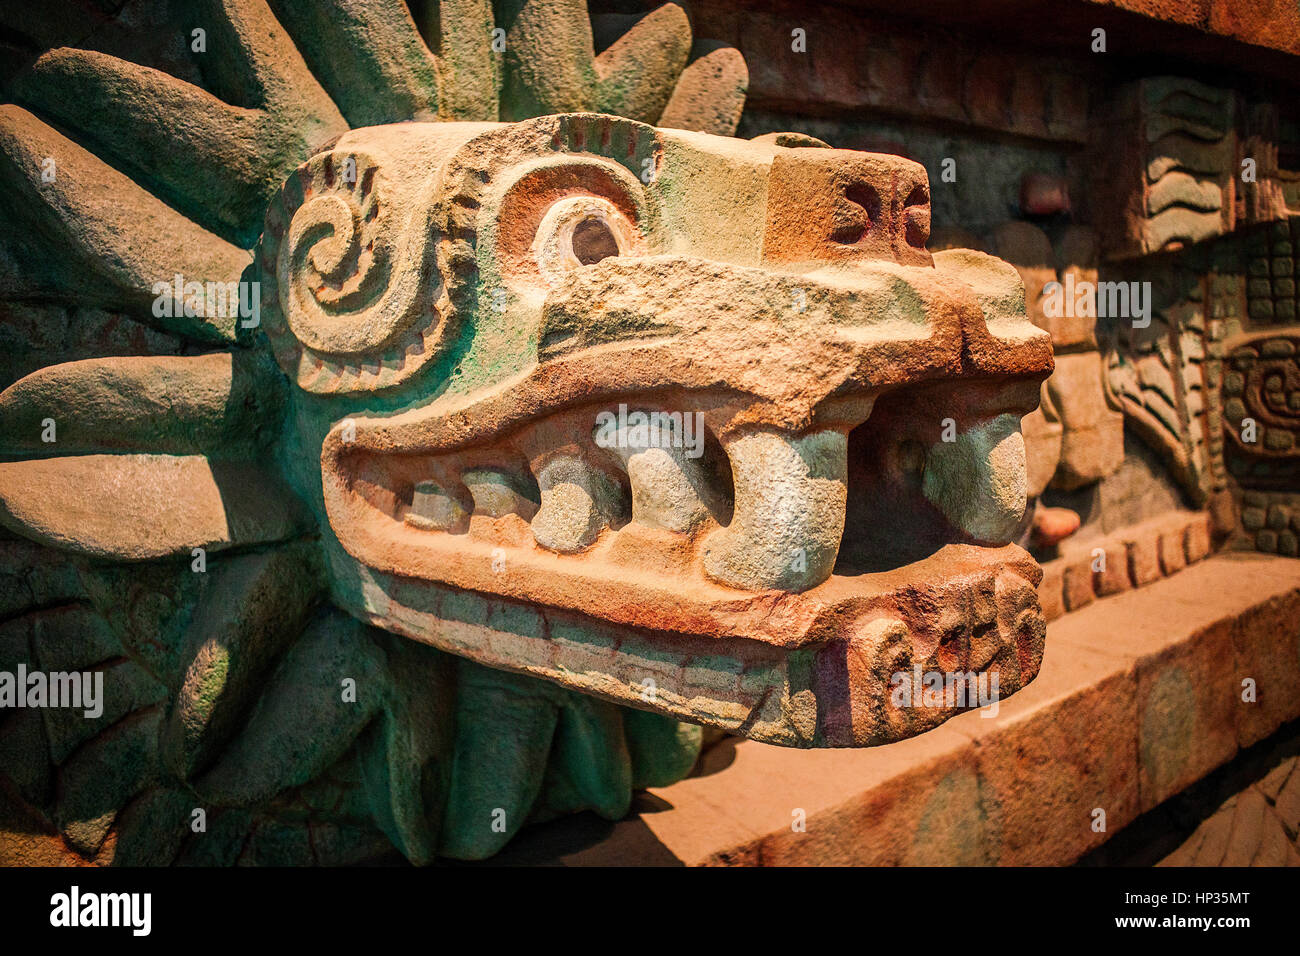 Réplica, Piramide de la serpiente emplumada´, Pirámide de la Serpiente emplumada, o serpiente, de Teotihuacan, Museo Nacional de Antropología. Ciudad de México. Foto de stock